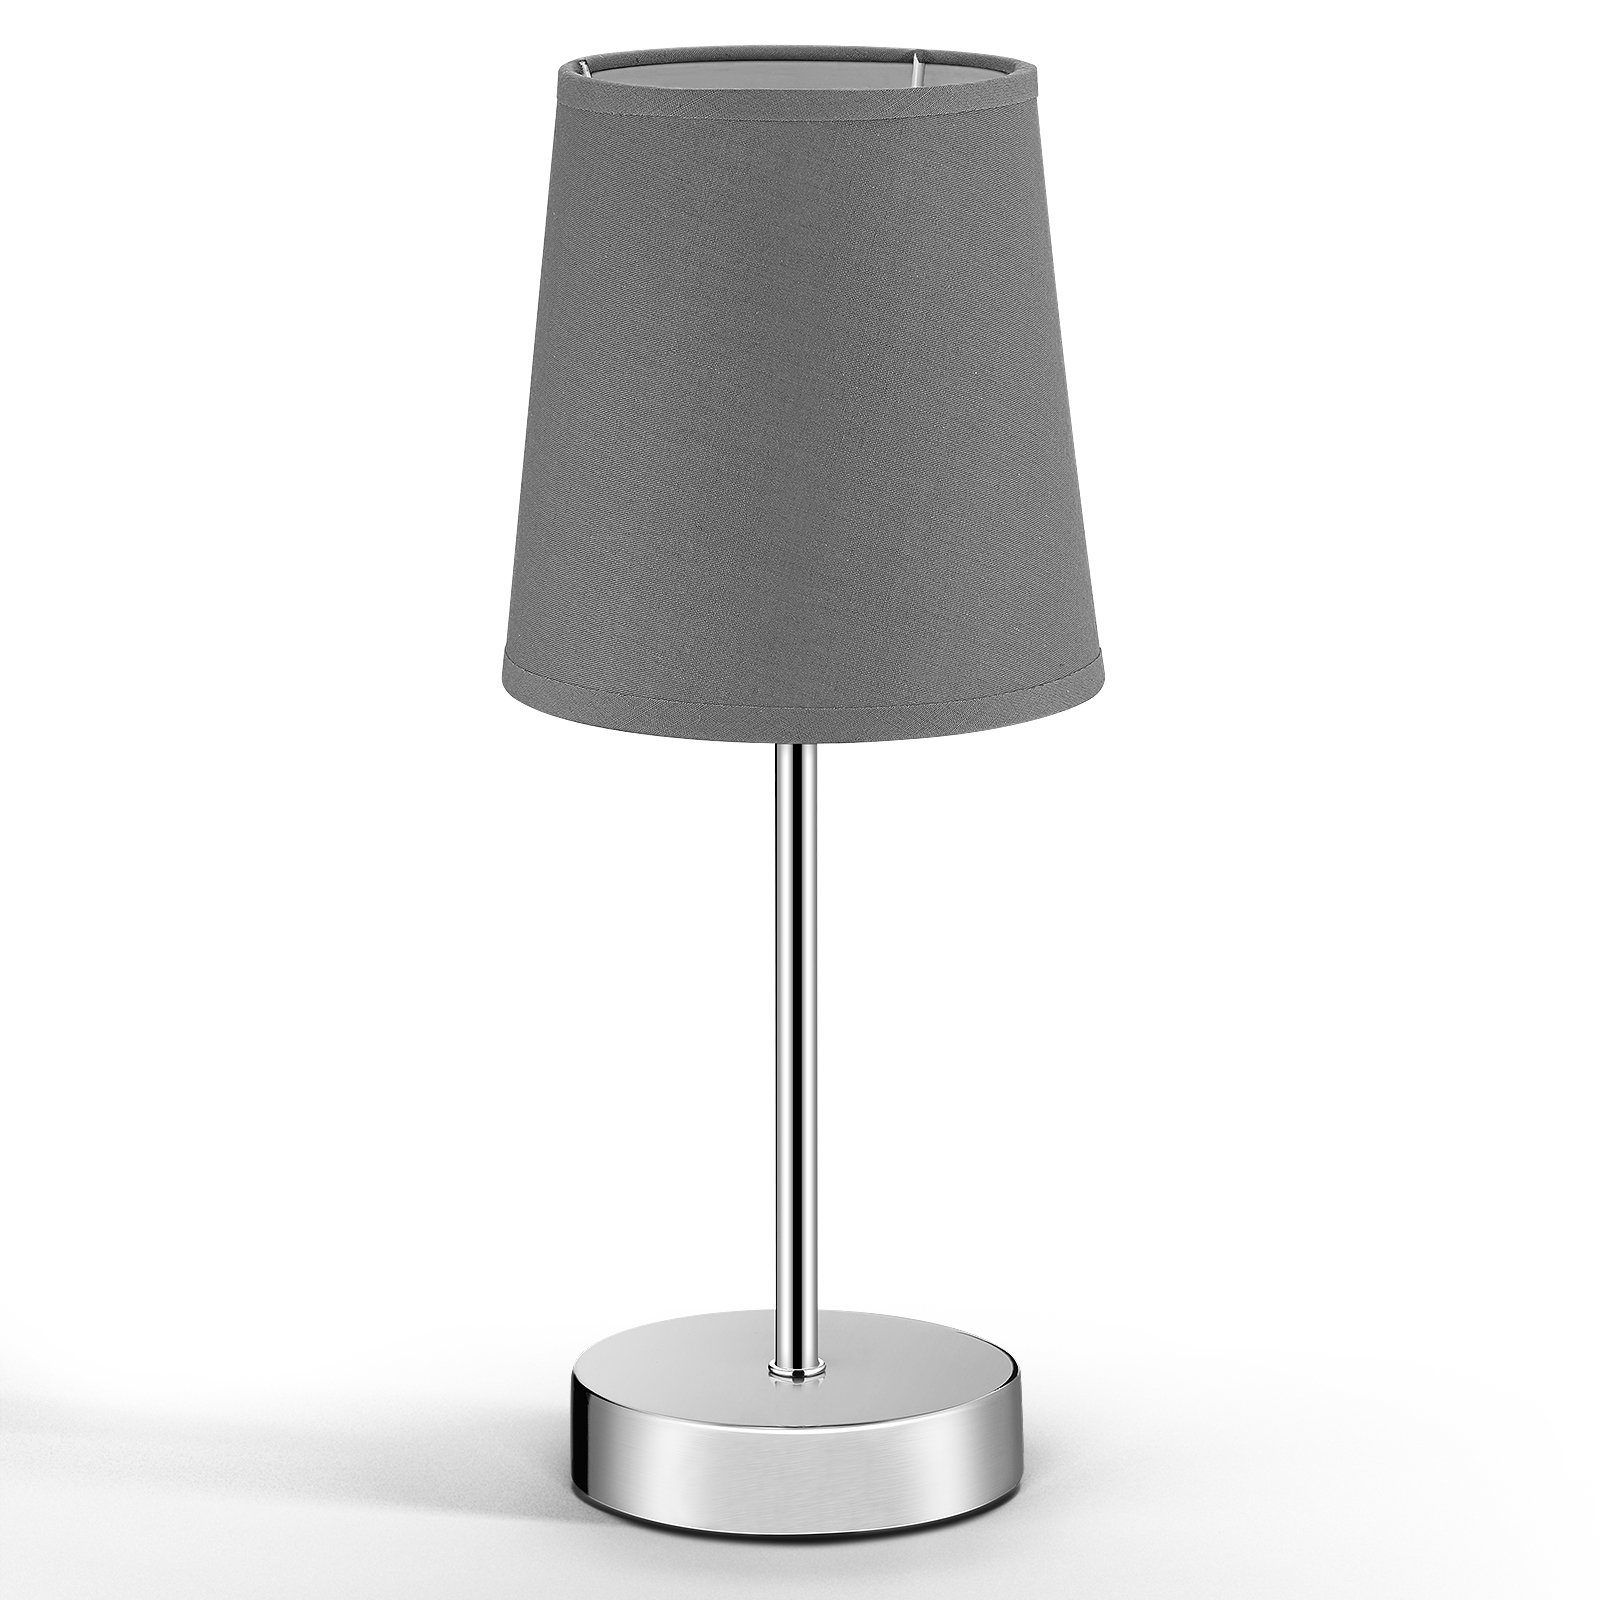 Monzana® Tischlampe Design Tischleuchte Nachttischlampe Wohnzimmerlampe Leuchte 